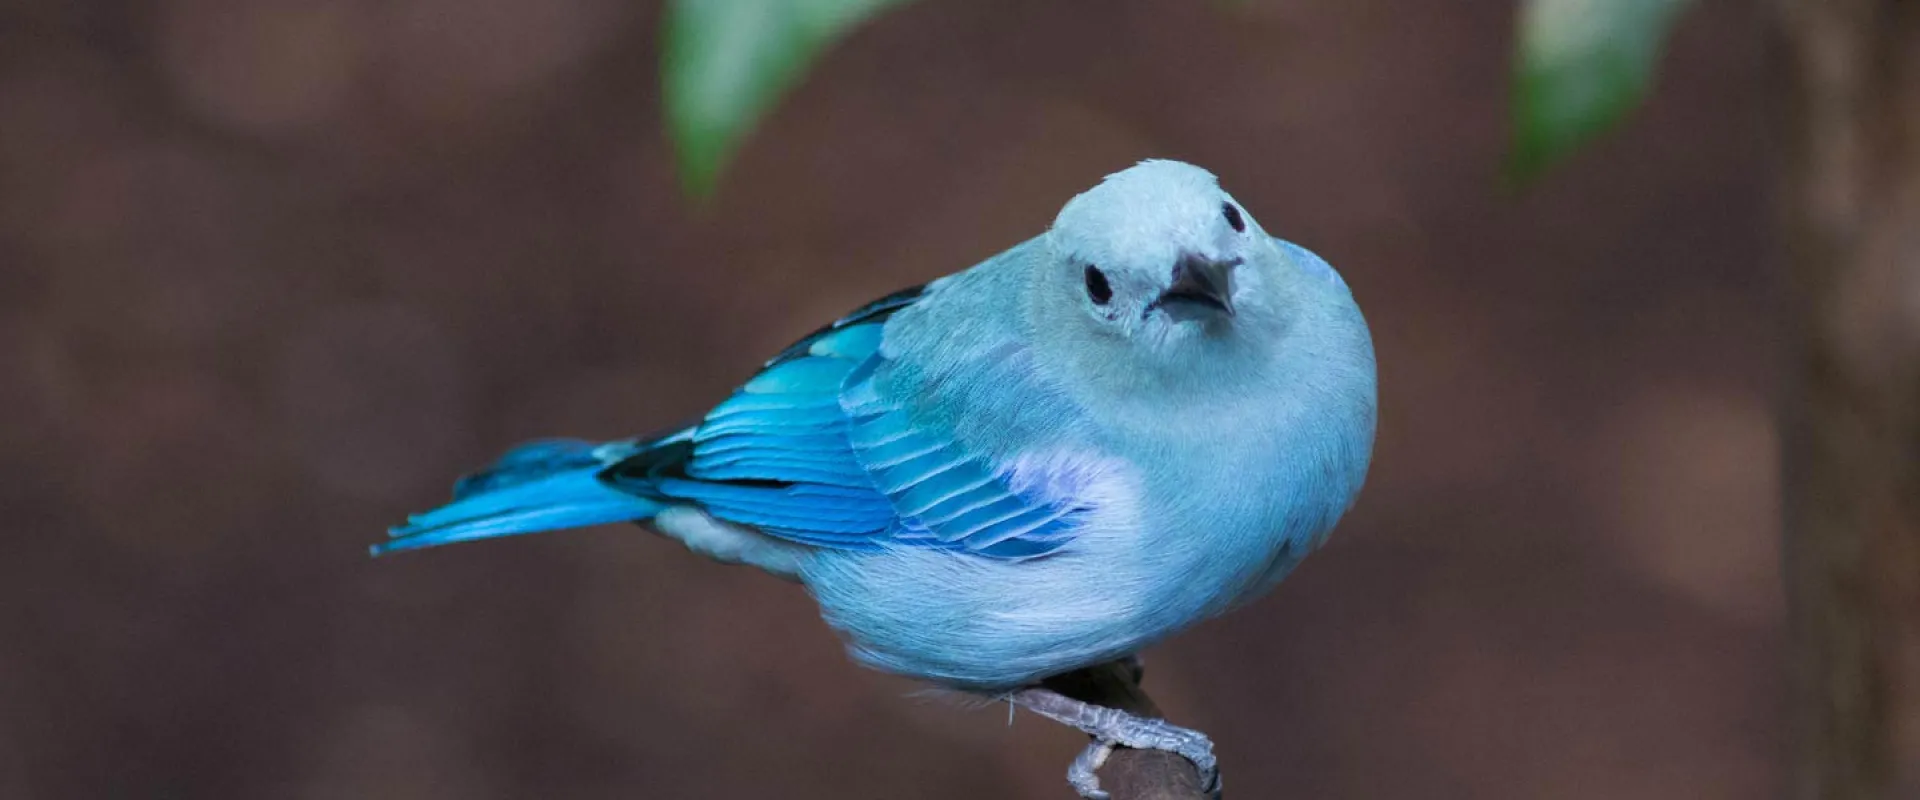 North Carolina Zoo Closes Aviary to the Public as Precautionary Measure to Protect Birds